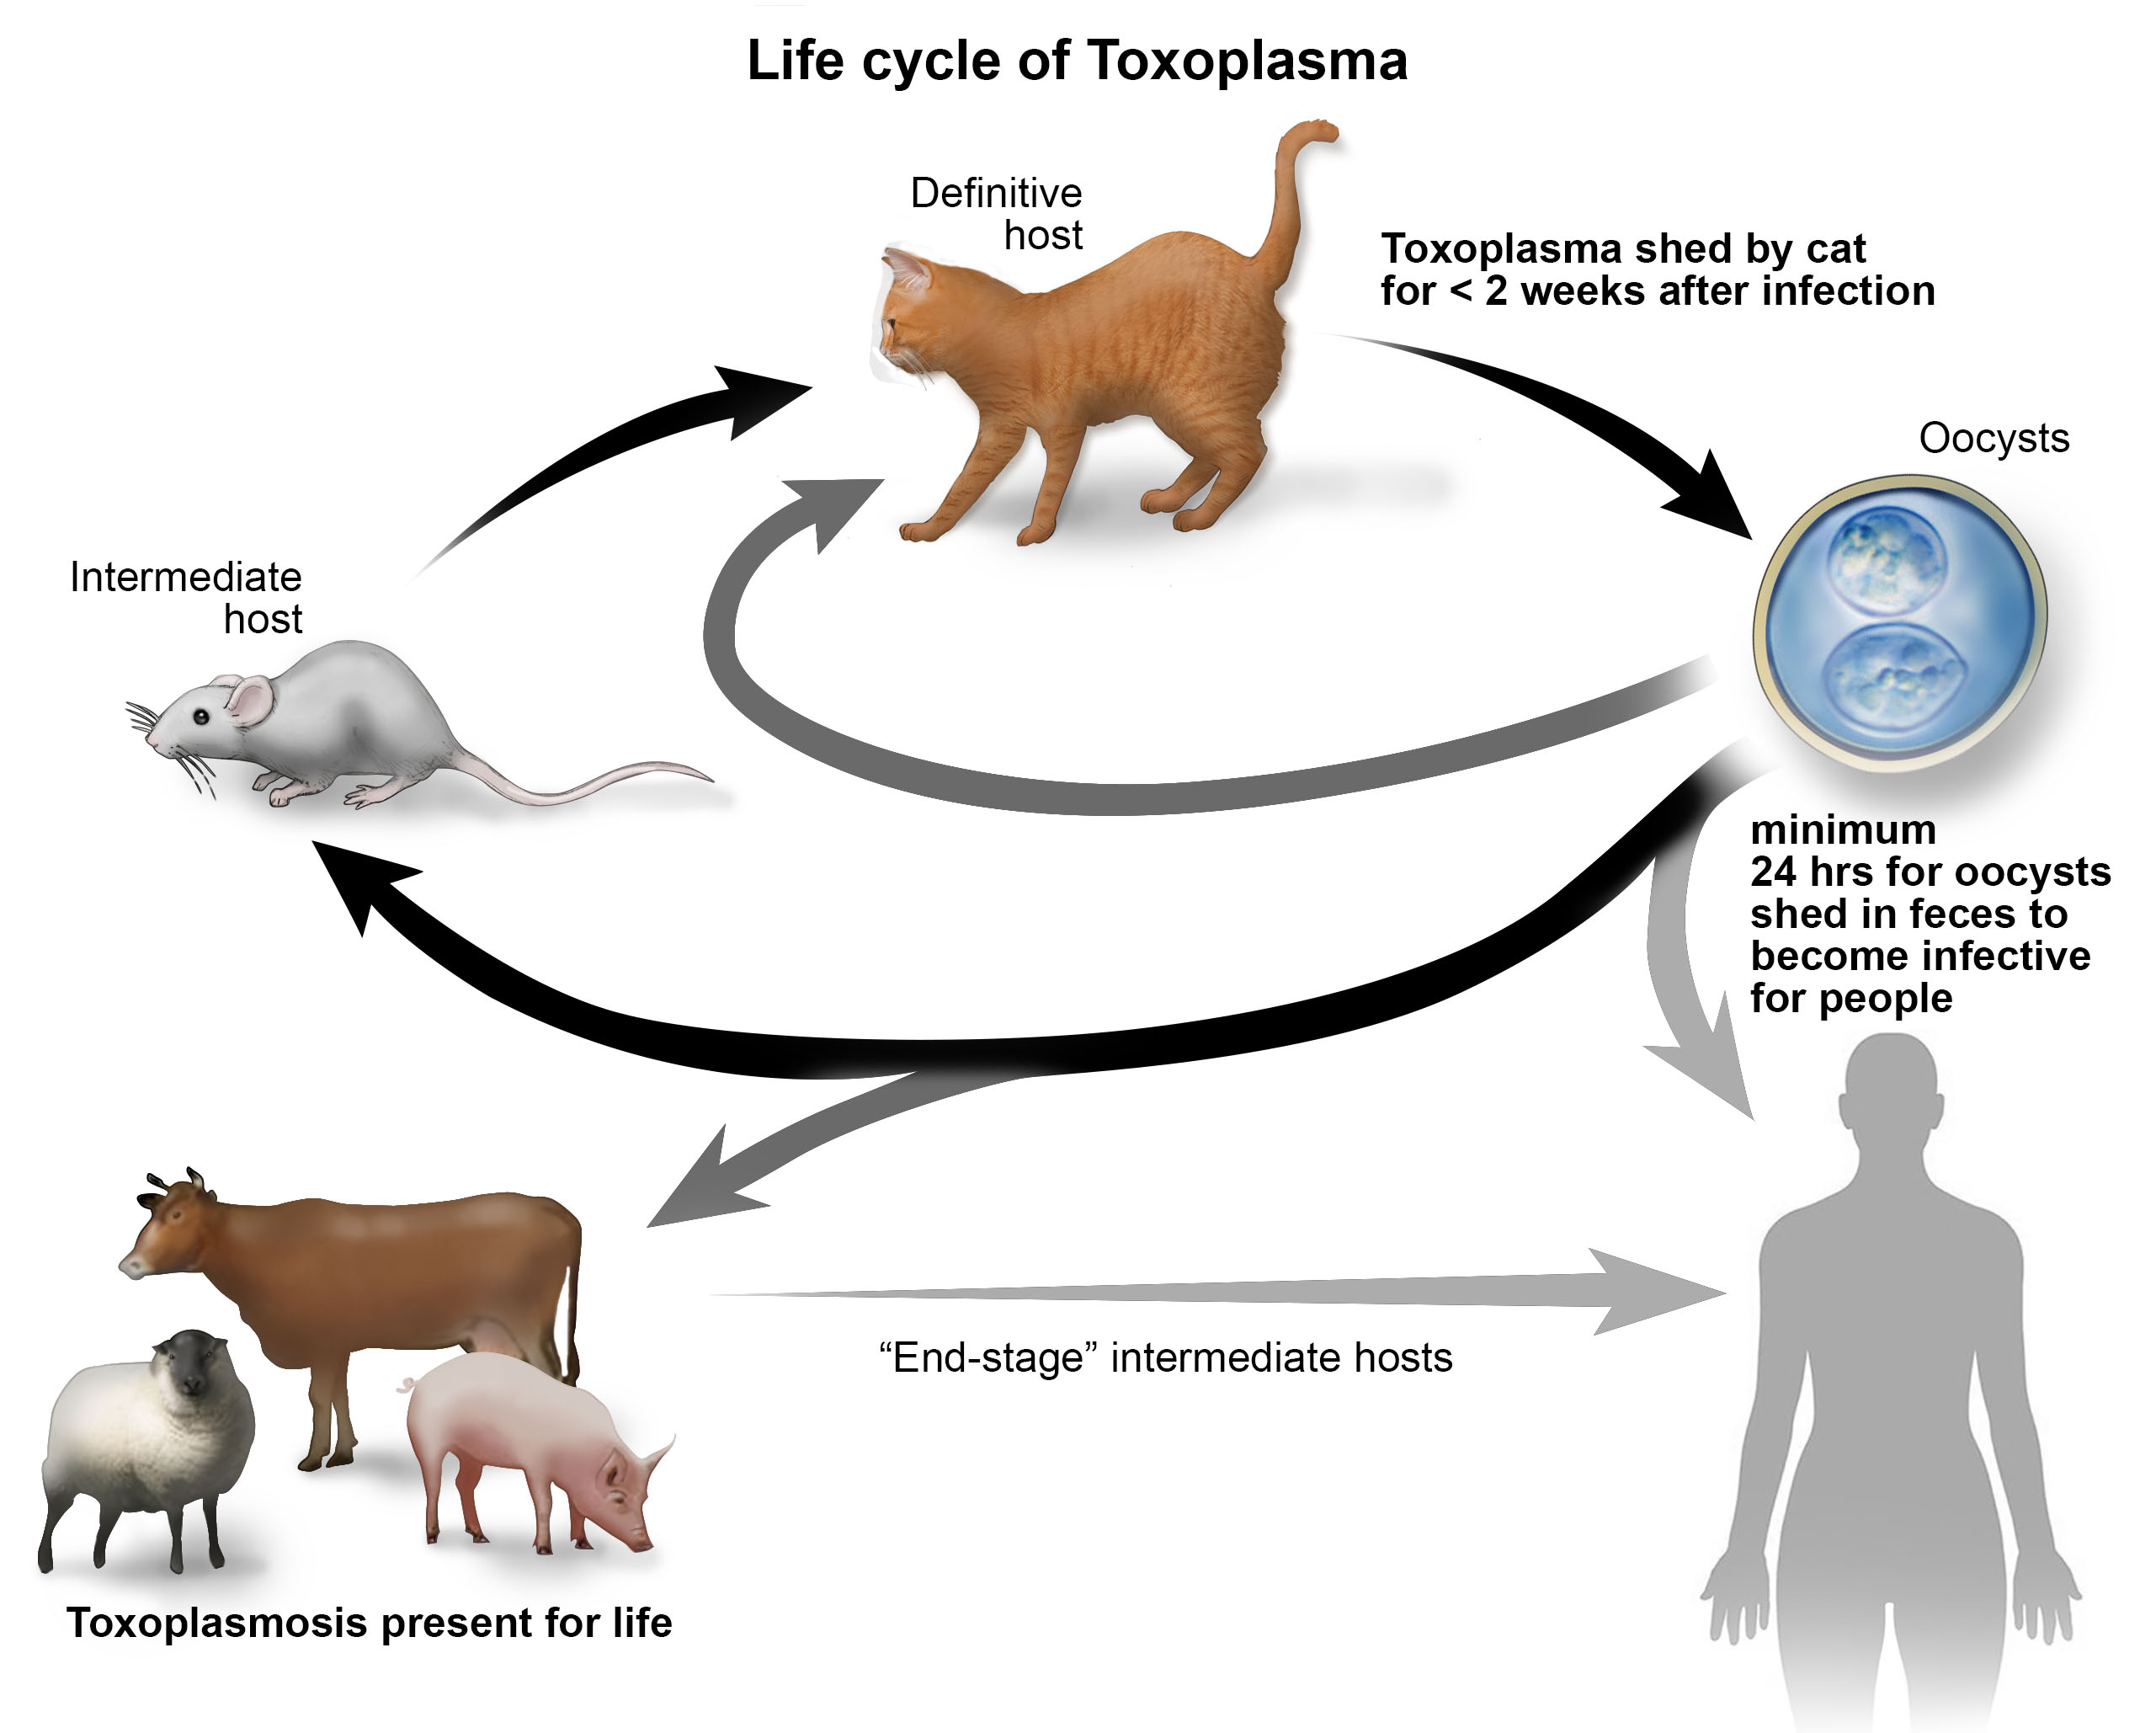 Toxoplasma rất dễ lây nghiễm qua đường tiêu hóa.